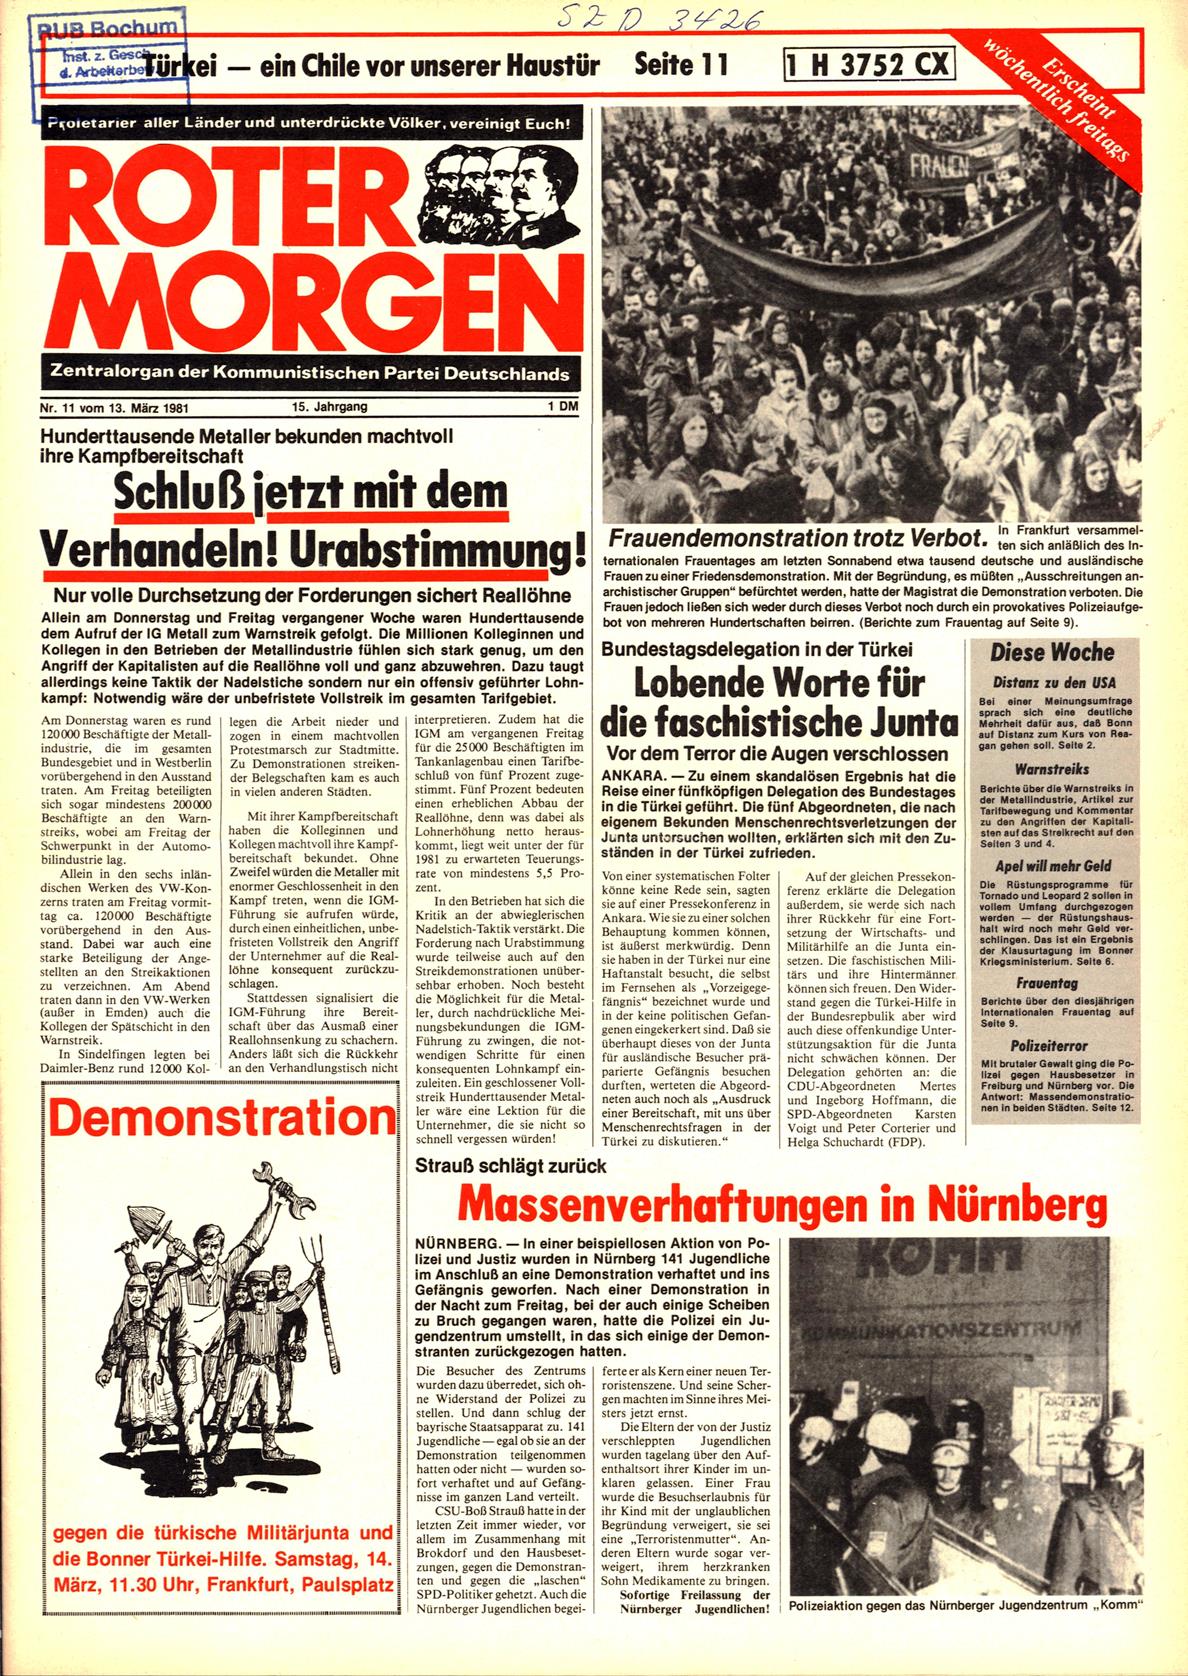 Roter Morgen, 15. Jg., 13. März 1981, Nr. 11, Seite 1